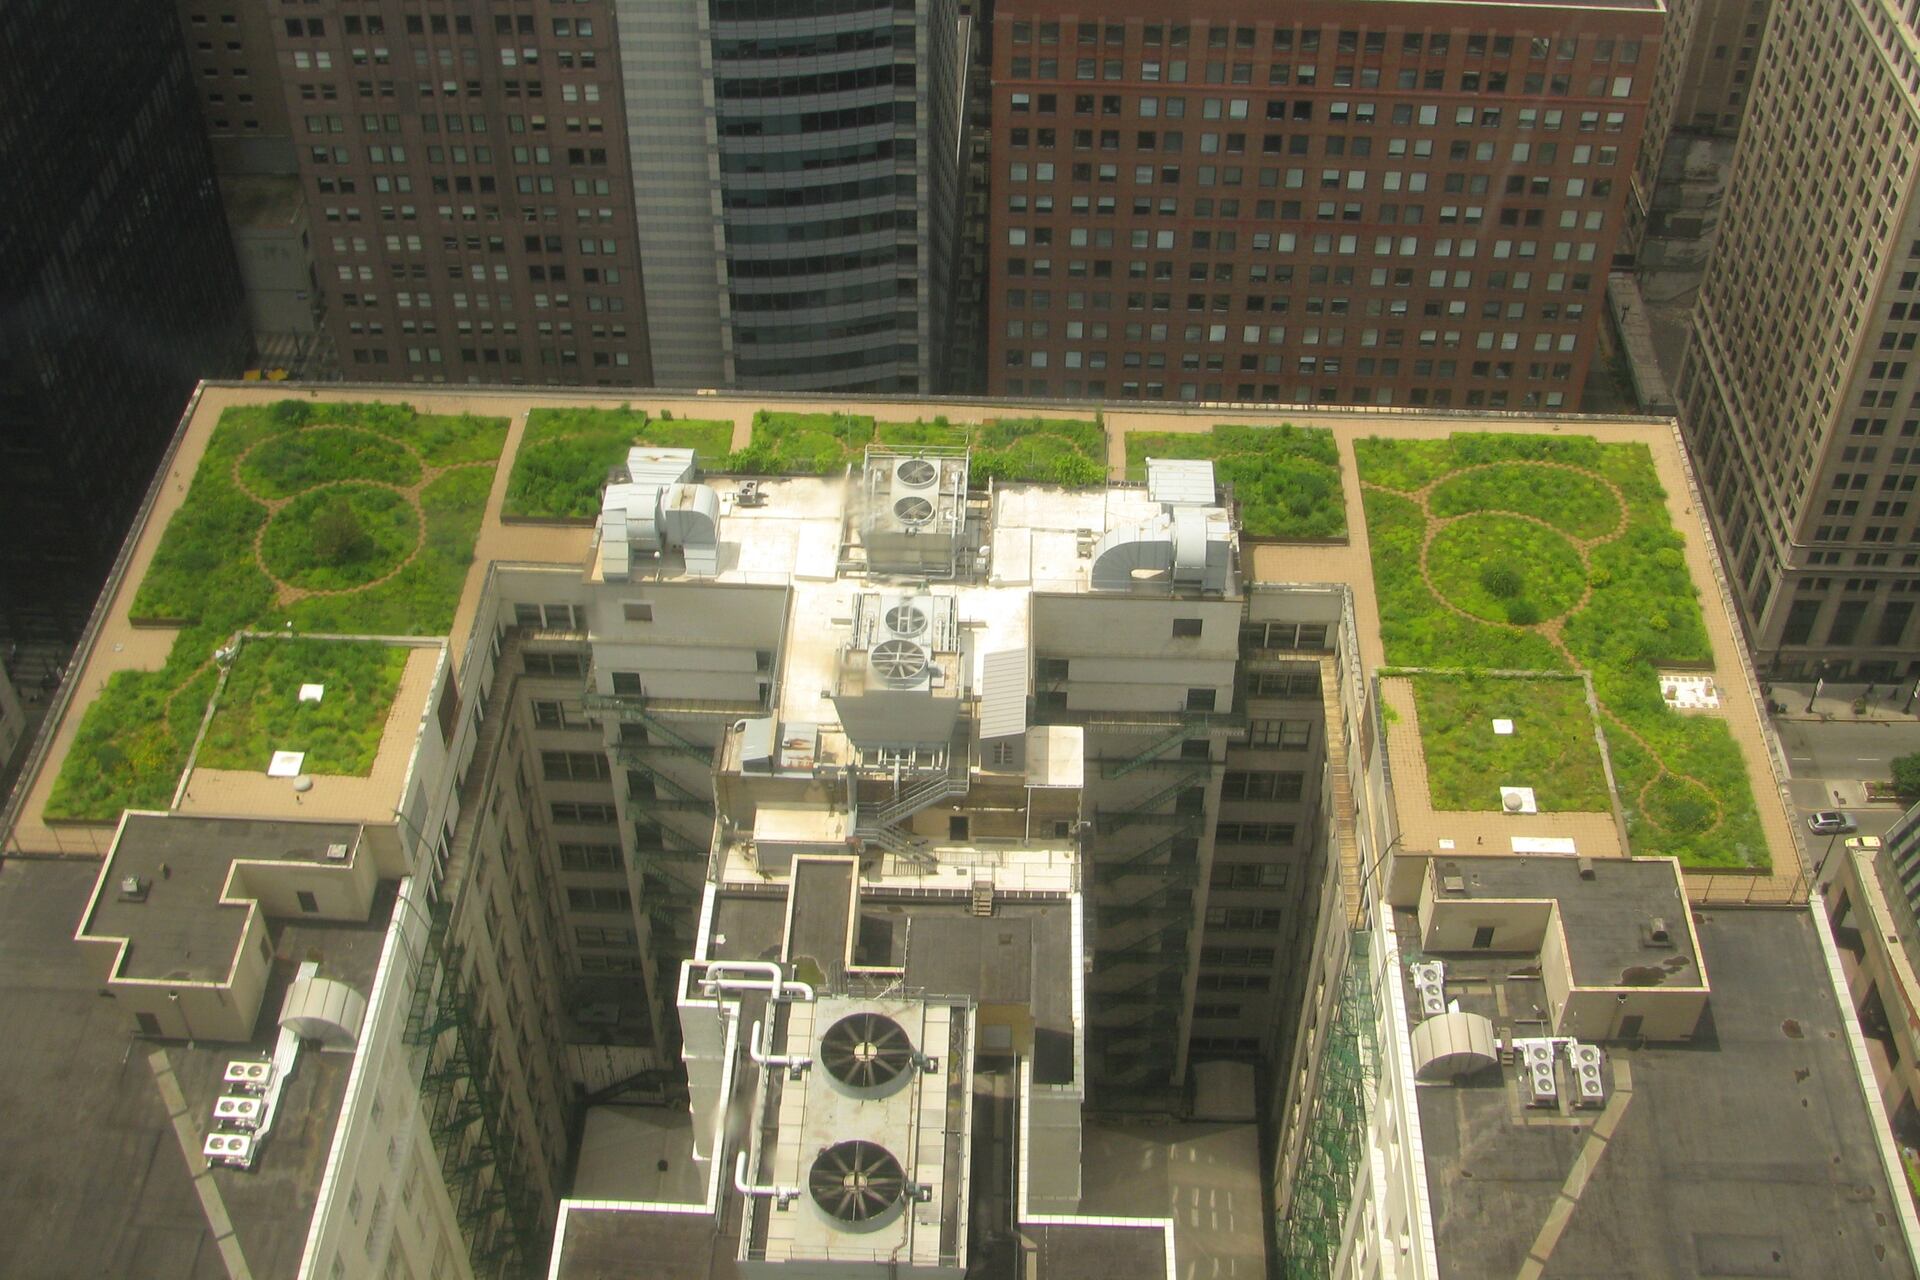 Un giardino pensile sul tetto del Municipio di Chicago negli USA